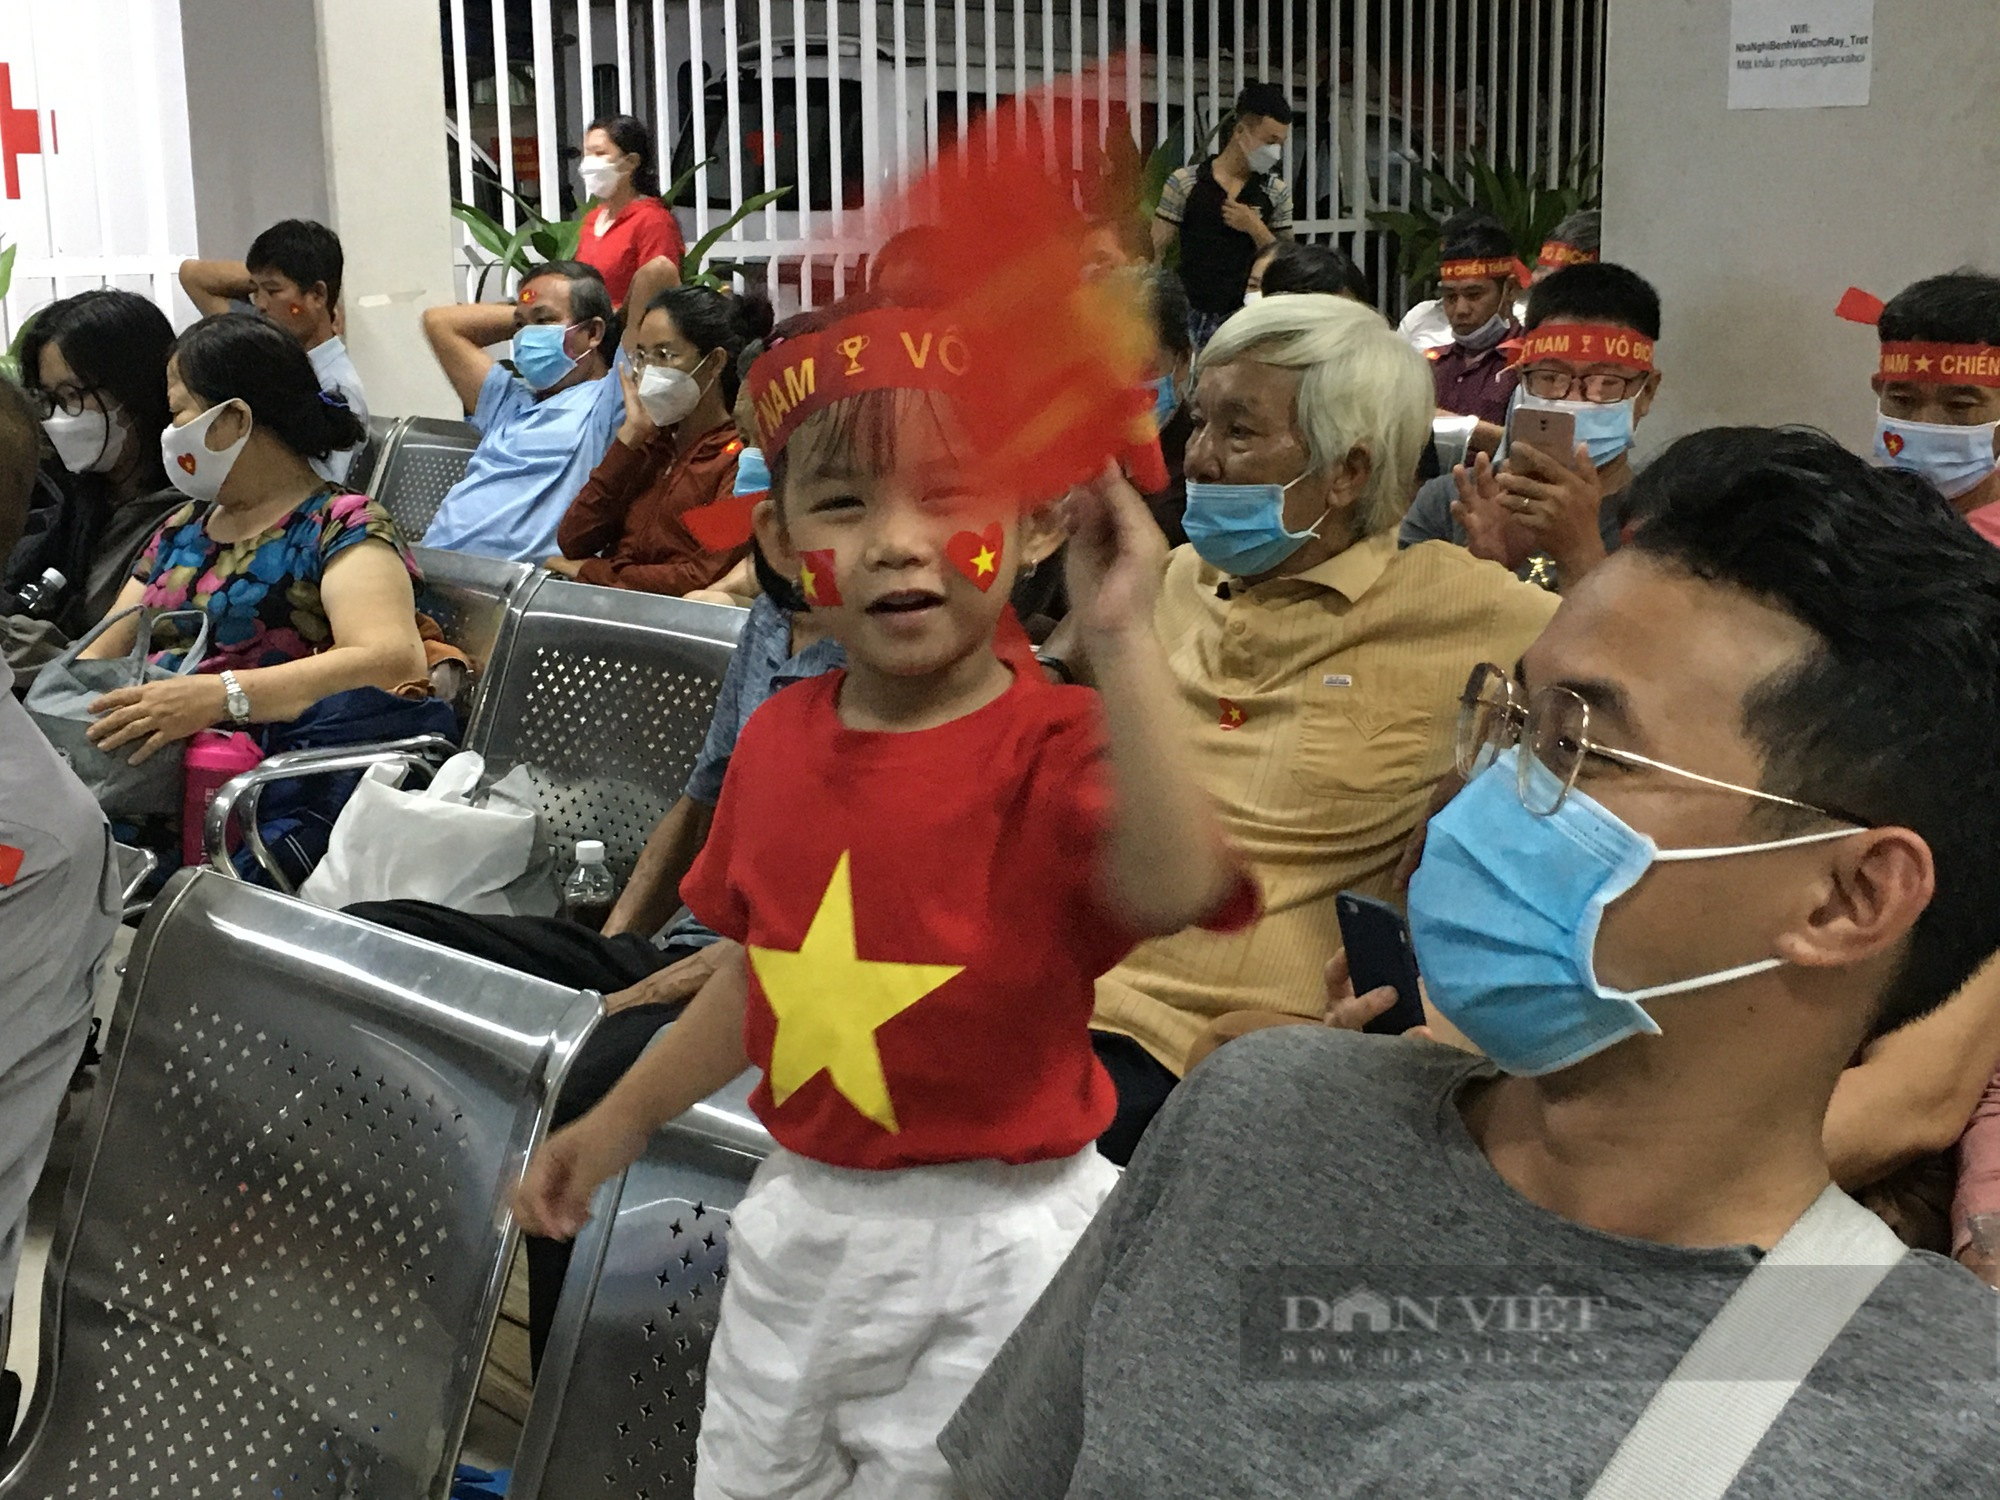 Bỏ qua cơn đau bệnh tật, bệnh nhân vỡ oà niềm vui chiến thắng với U23 Việt Nam - Ảnh 5.